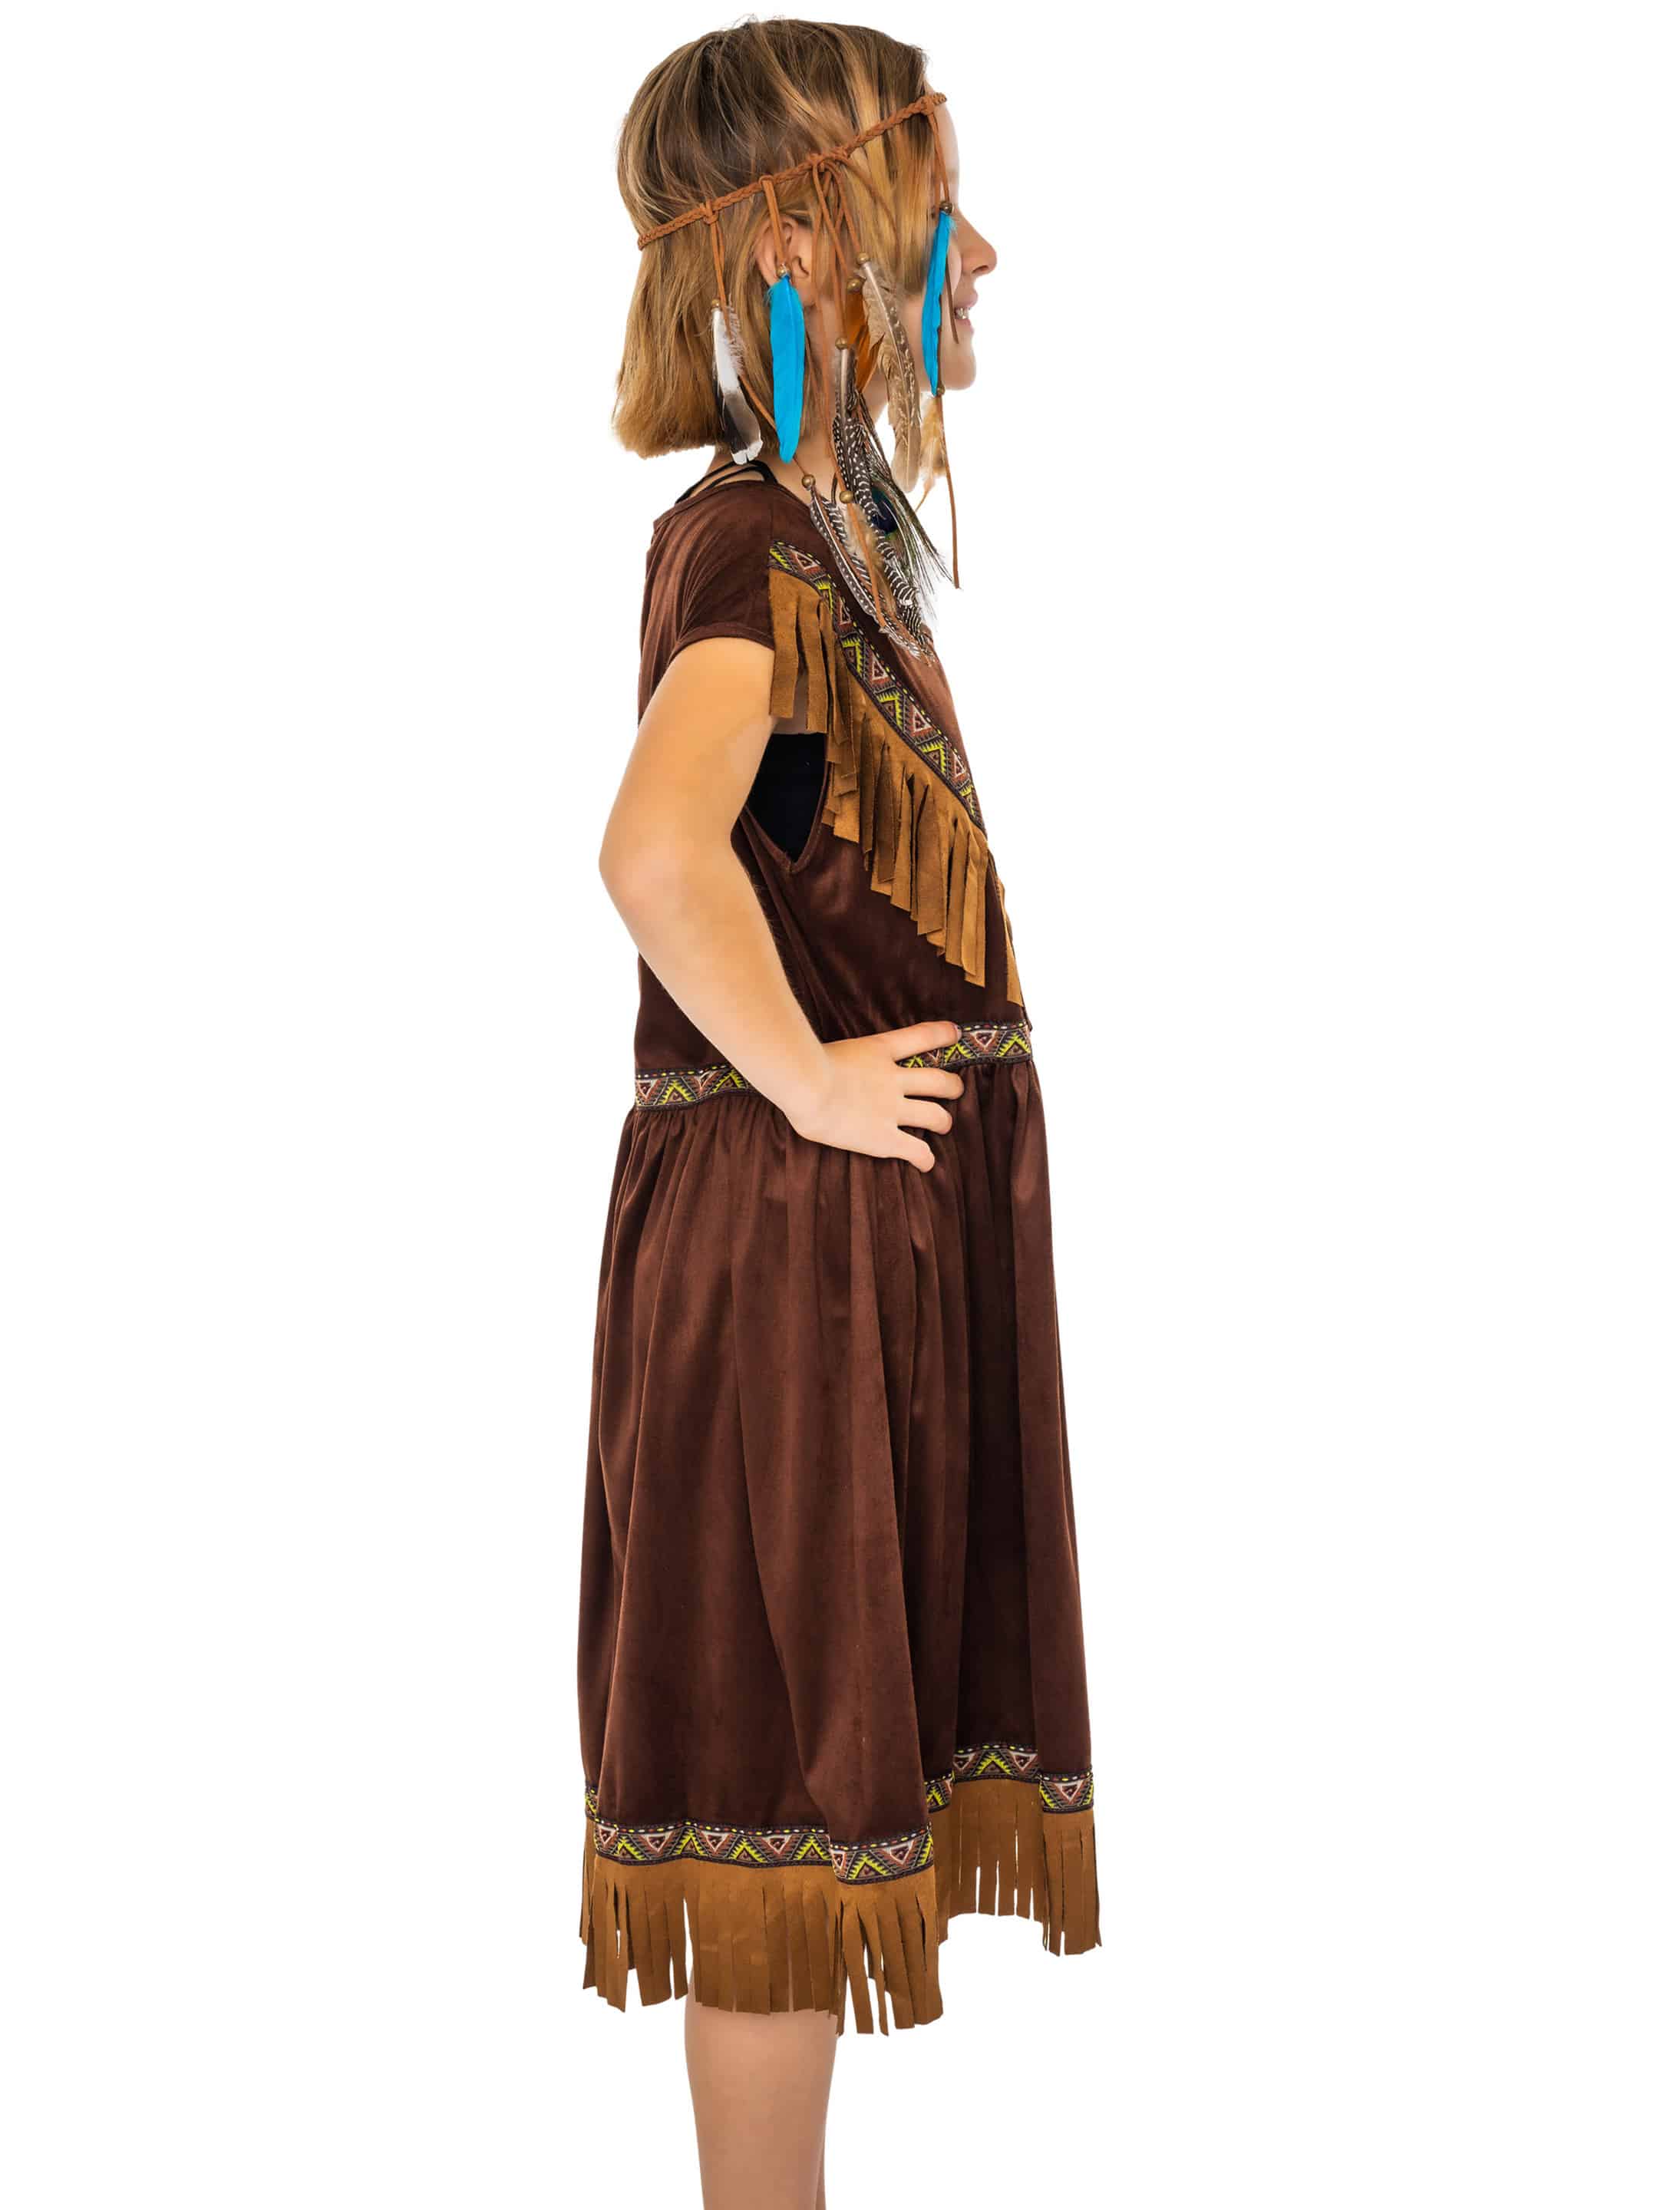 Kleid Indianerin Tahki Kinder Mädchen braun 104